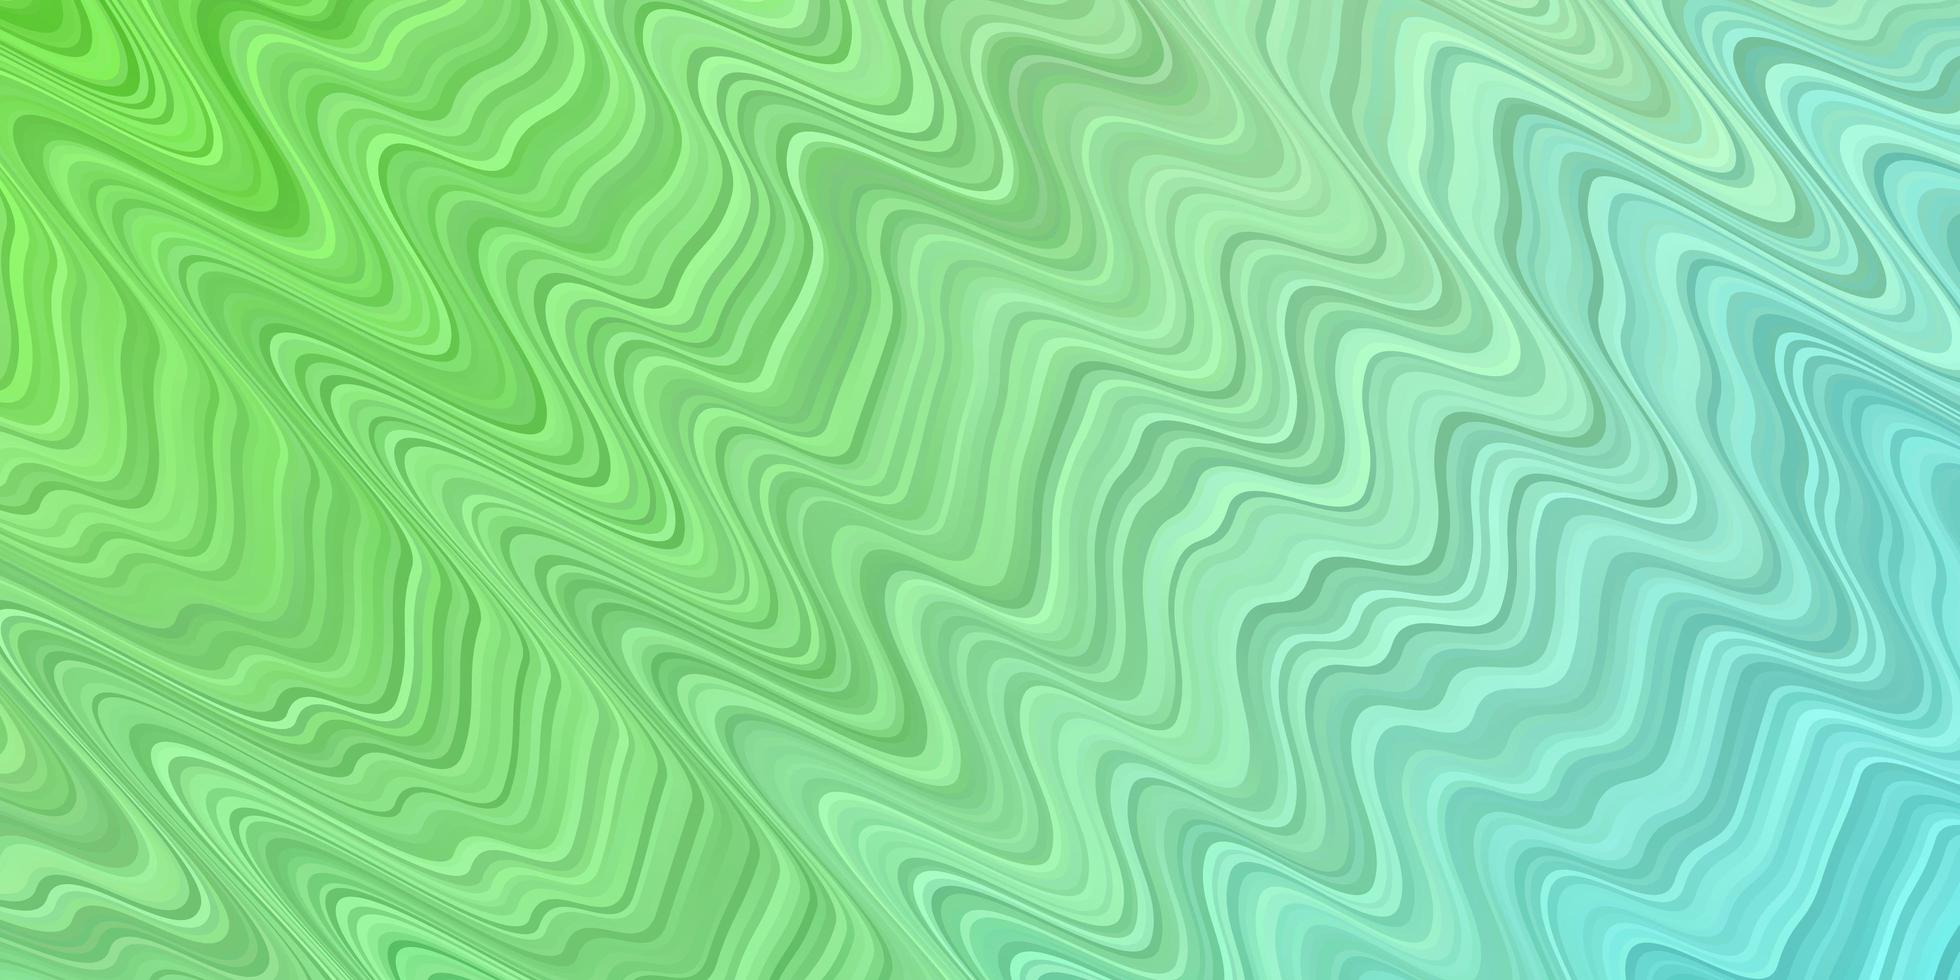 texture vecteur vert clair avec des courbes toute nouvelle illustration colorée avec des lignes pliées meilleure conception pour votre bannière d'affiche publicitaire